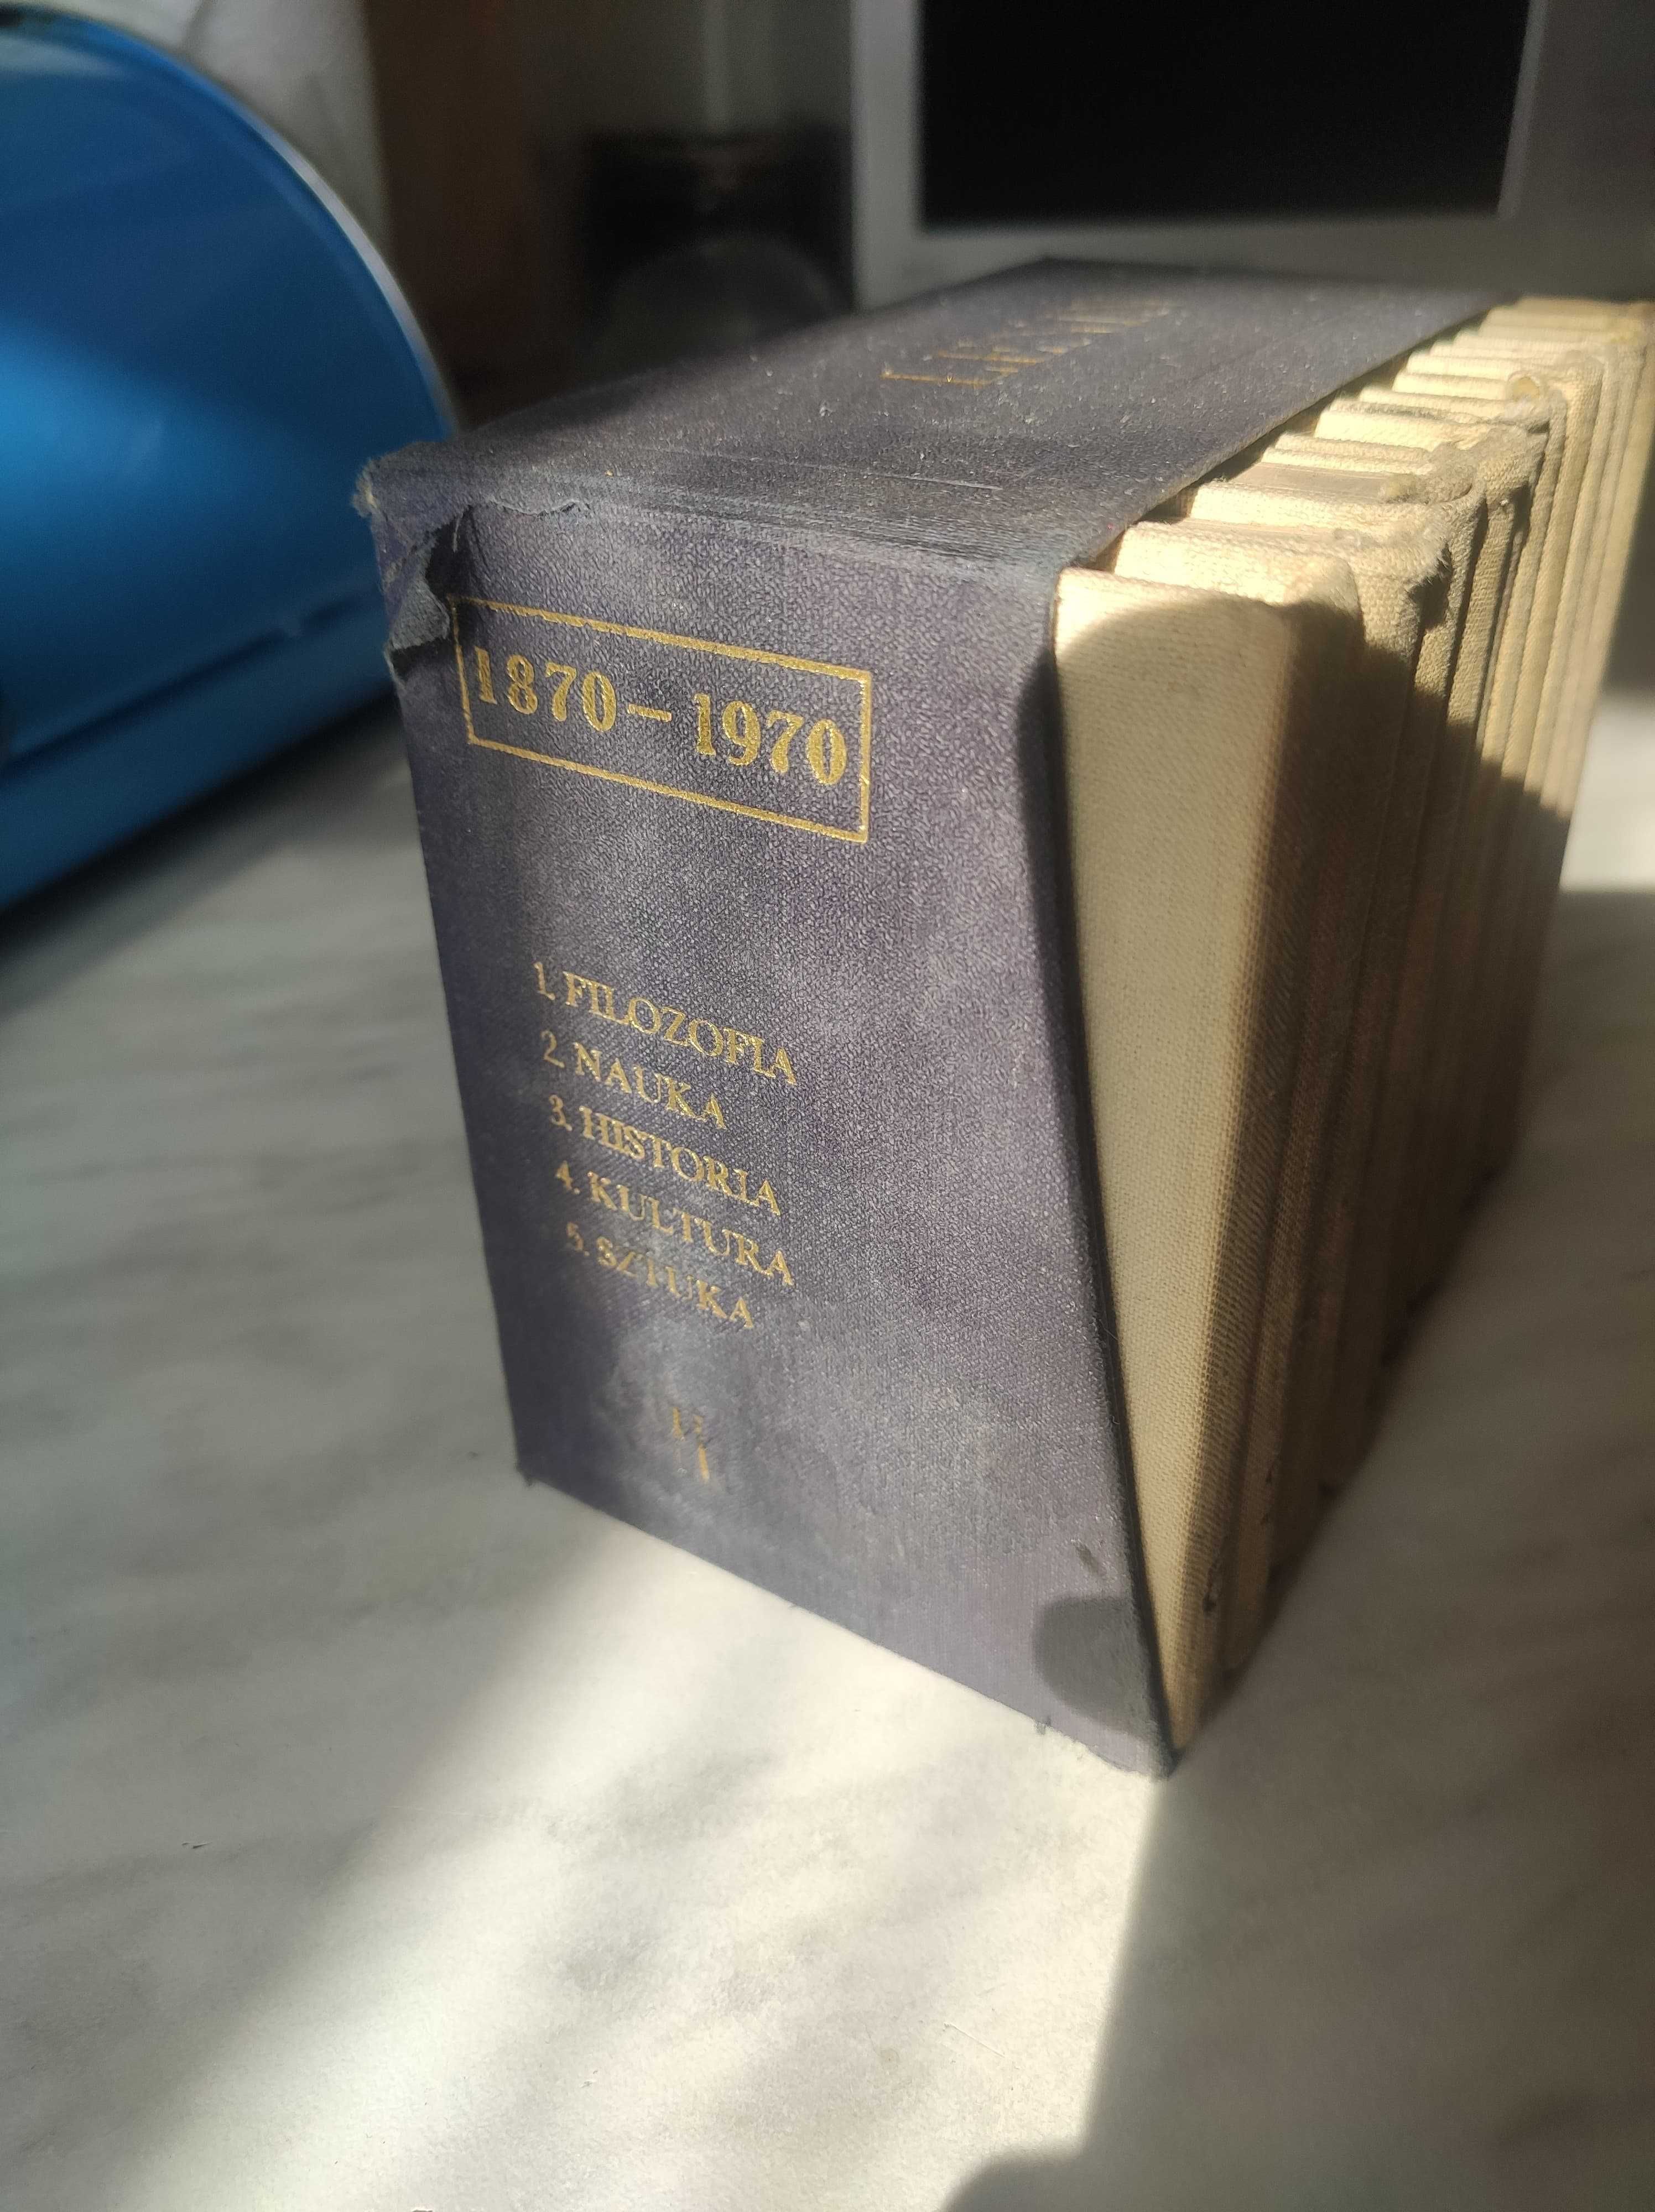 Lenin - 10 tomów, dzieła wybrane, specjalne wydanie 1970